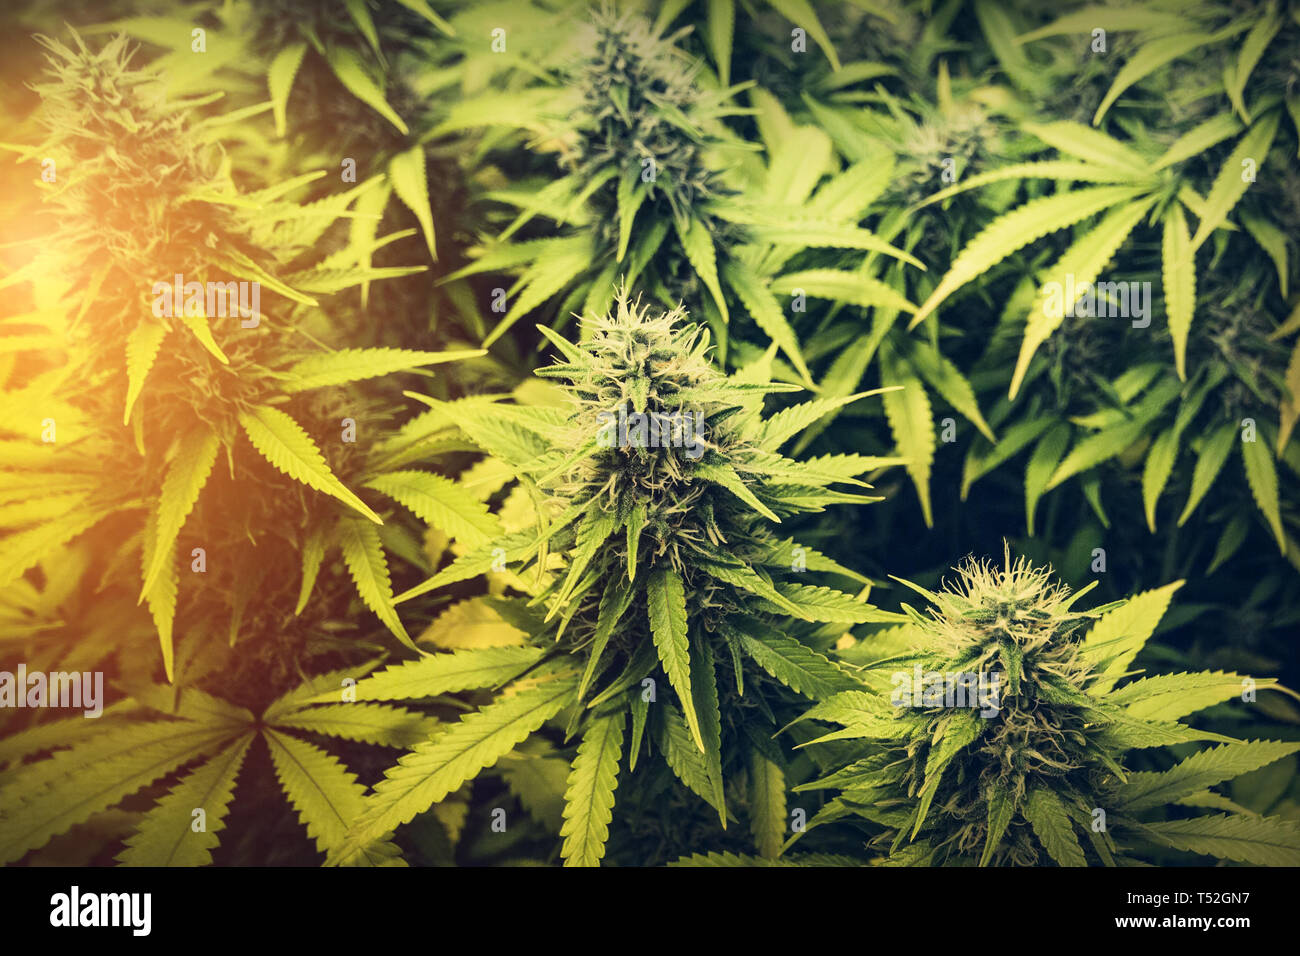 cannabis - indoor medical marijuana plants Stock Photo